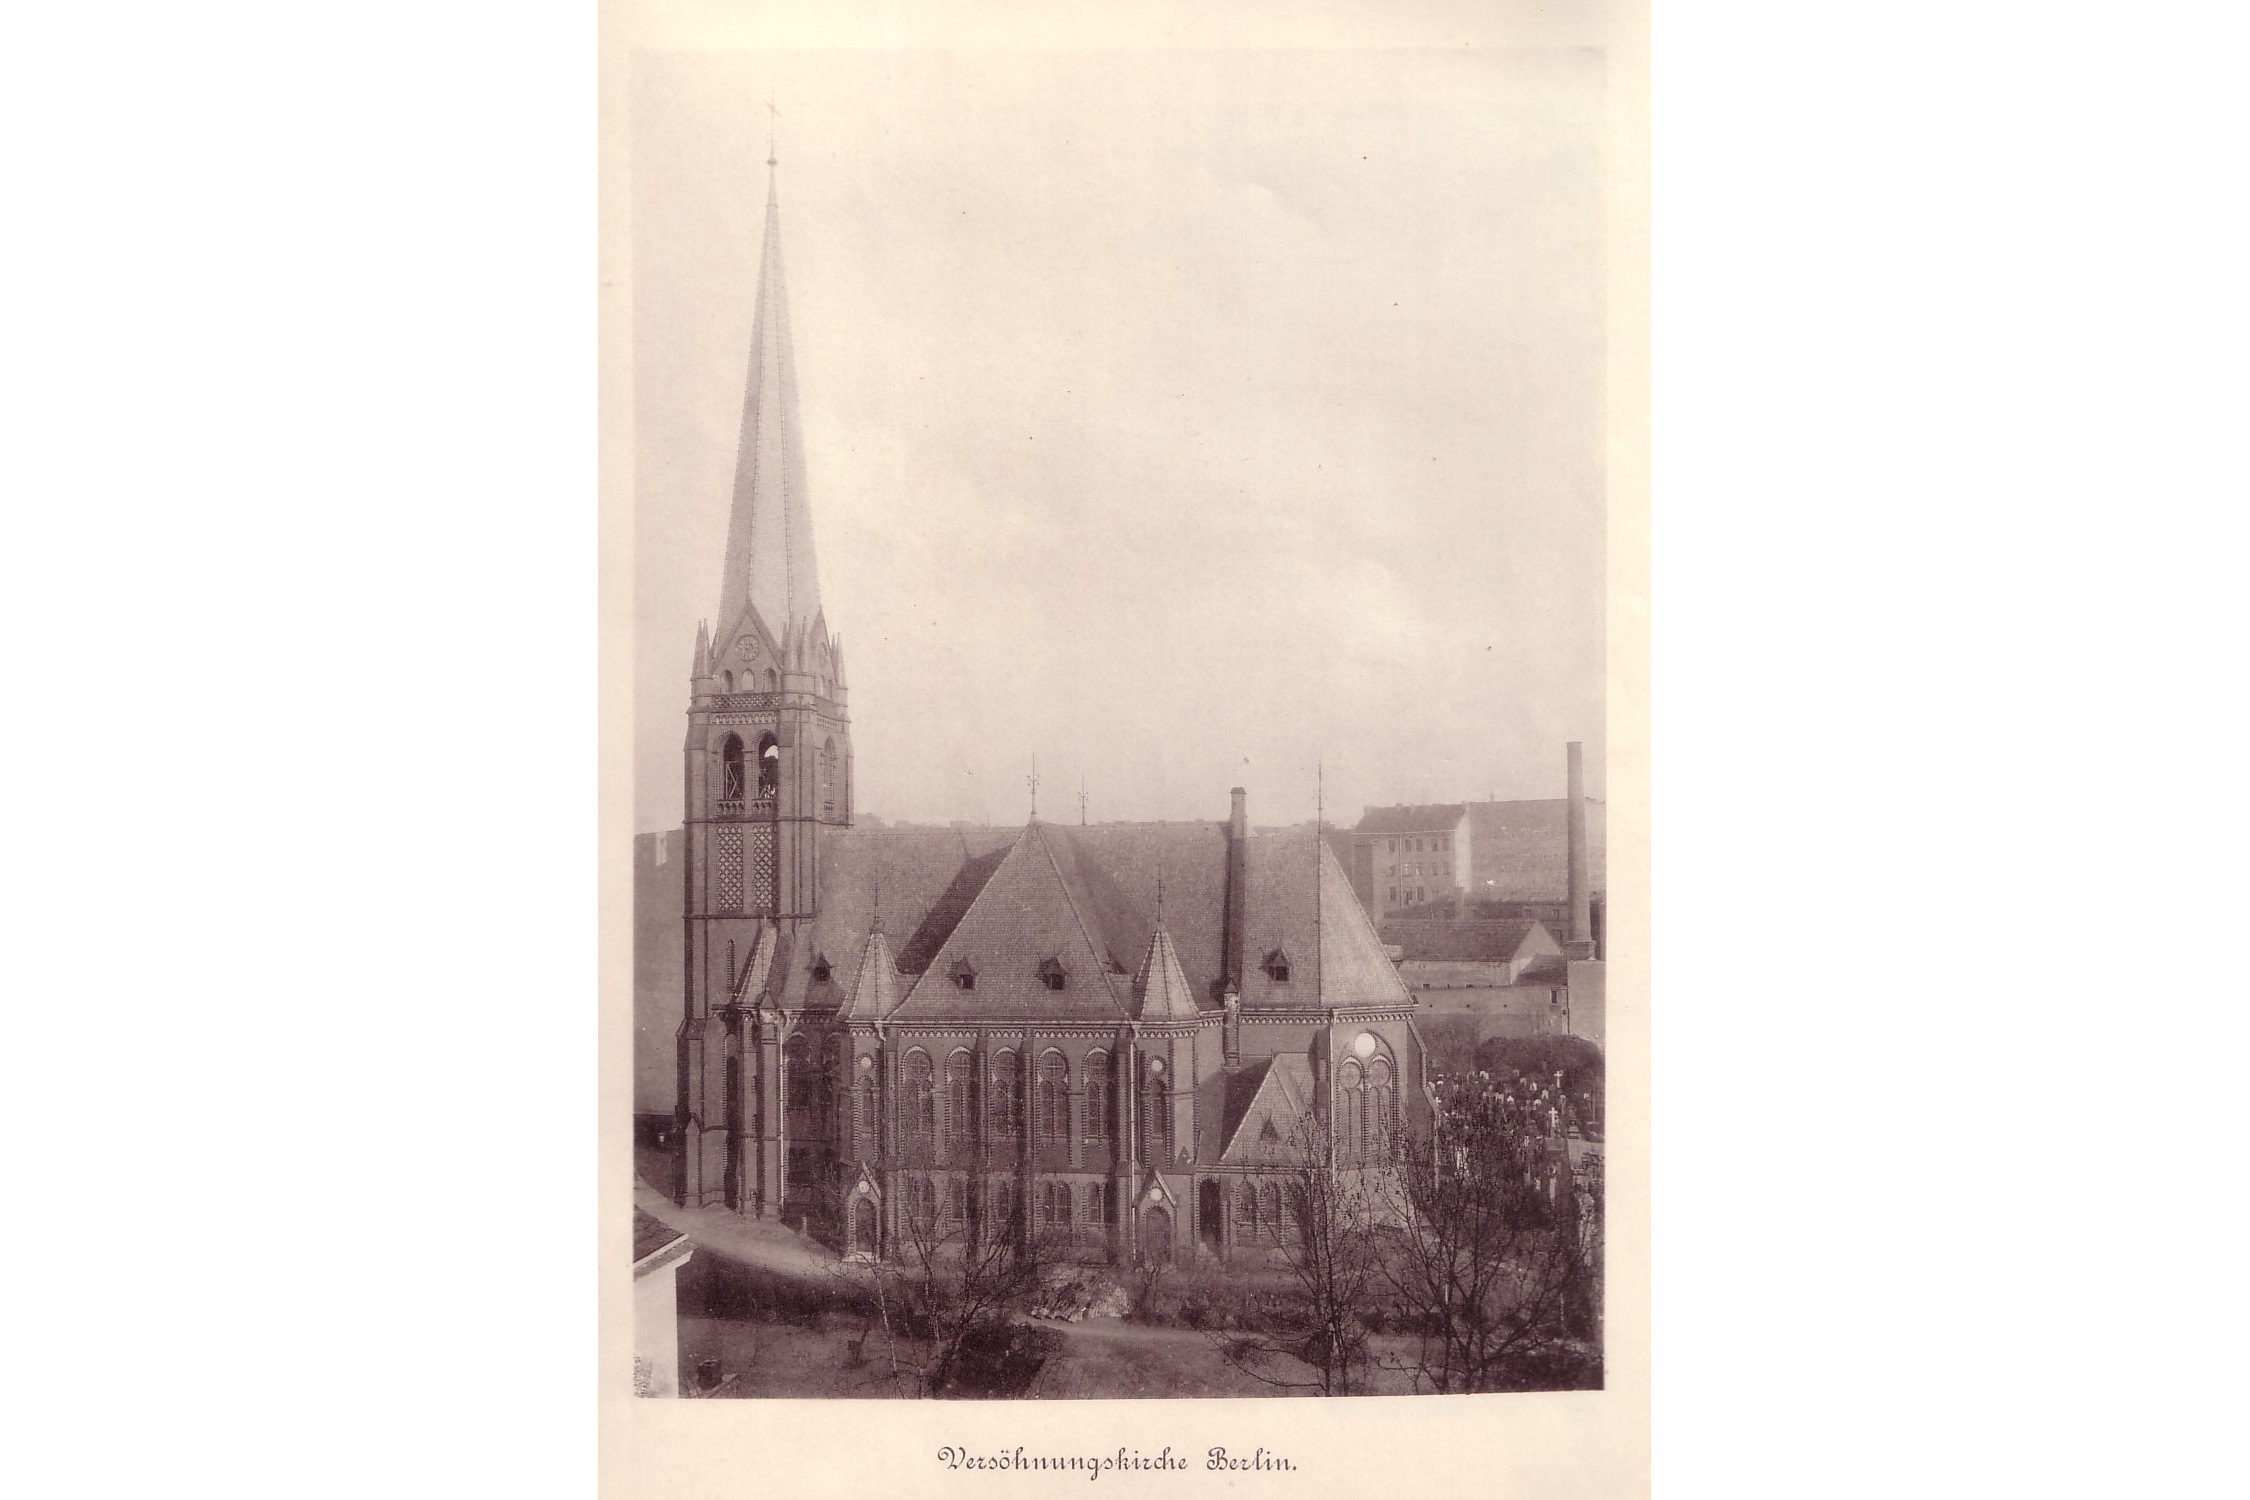 Die Kirchen-Ansicht vor 1899. Foto gemeinfrei, https://commons.wikimedia.org/wiki/File:Vers%C3%B6hnungskirche_Berlin_1899.jpg